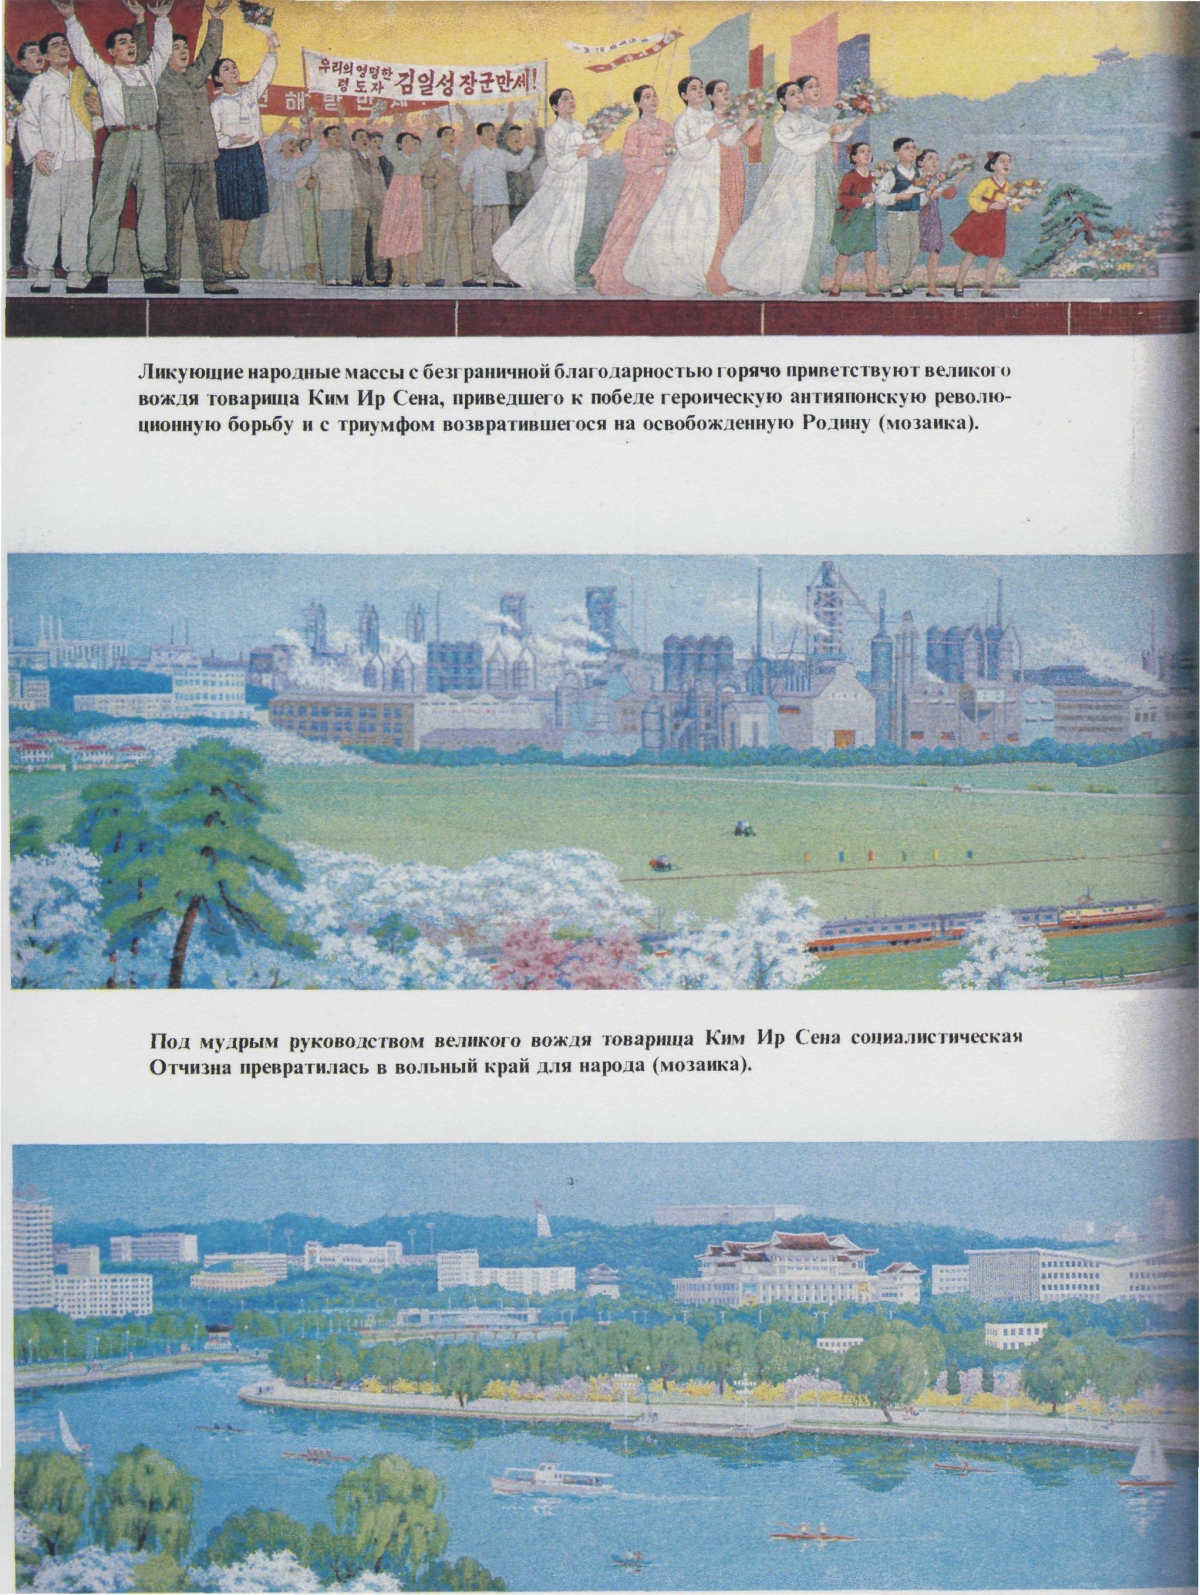 Пхеньян — линия 2 — станция Конгук (Основание Государства); Пхеньян — Метрополитен — Исторические фотографии